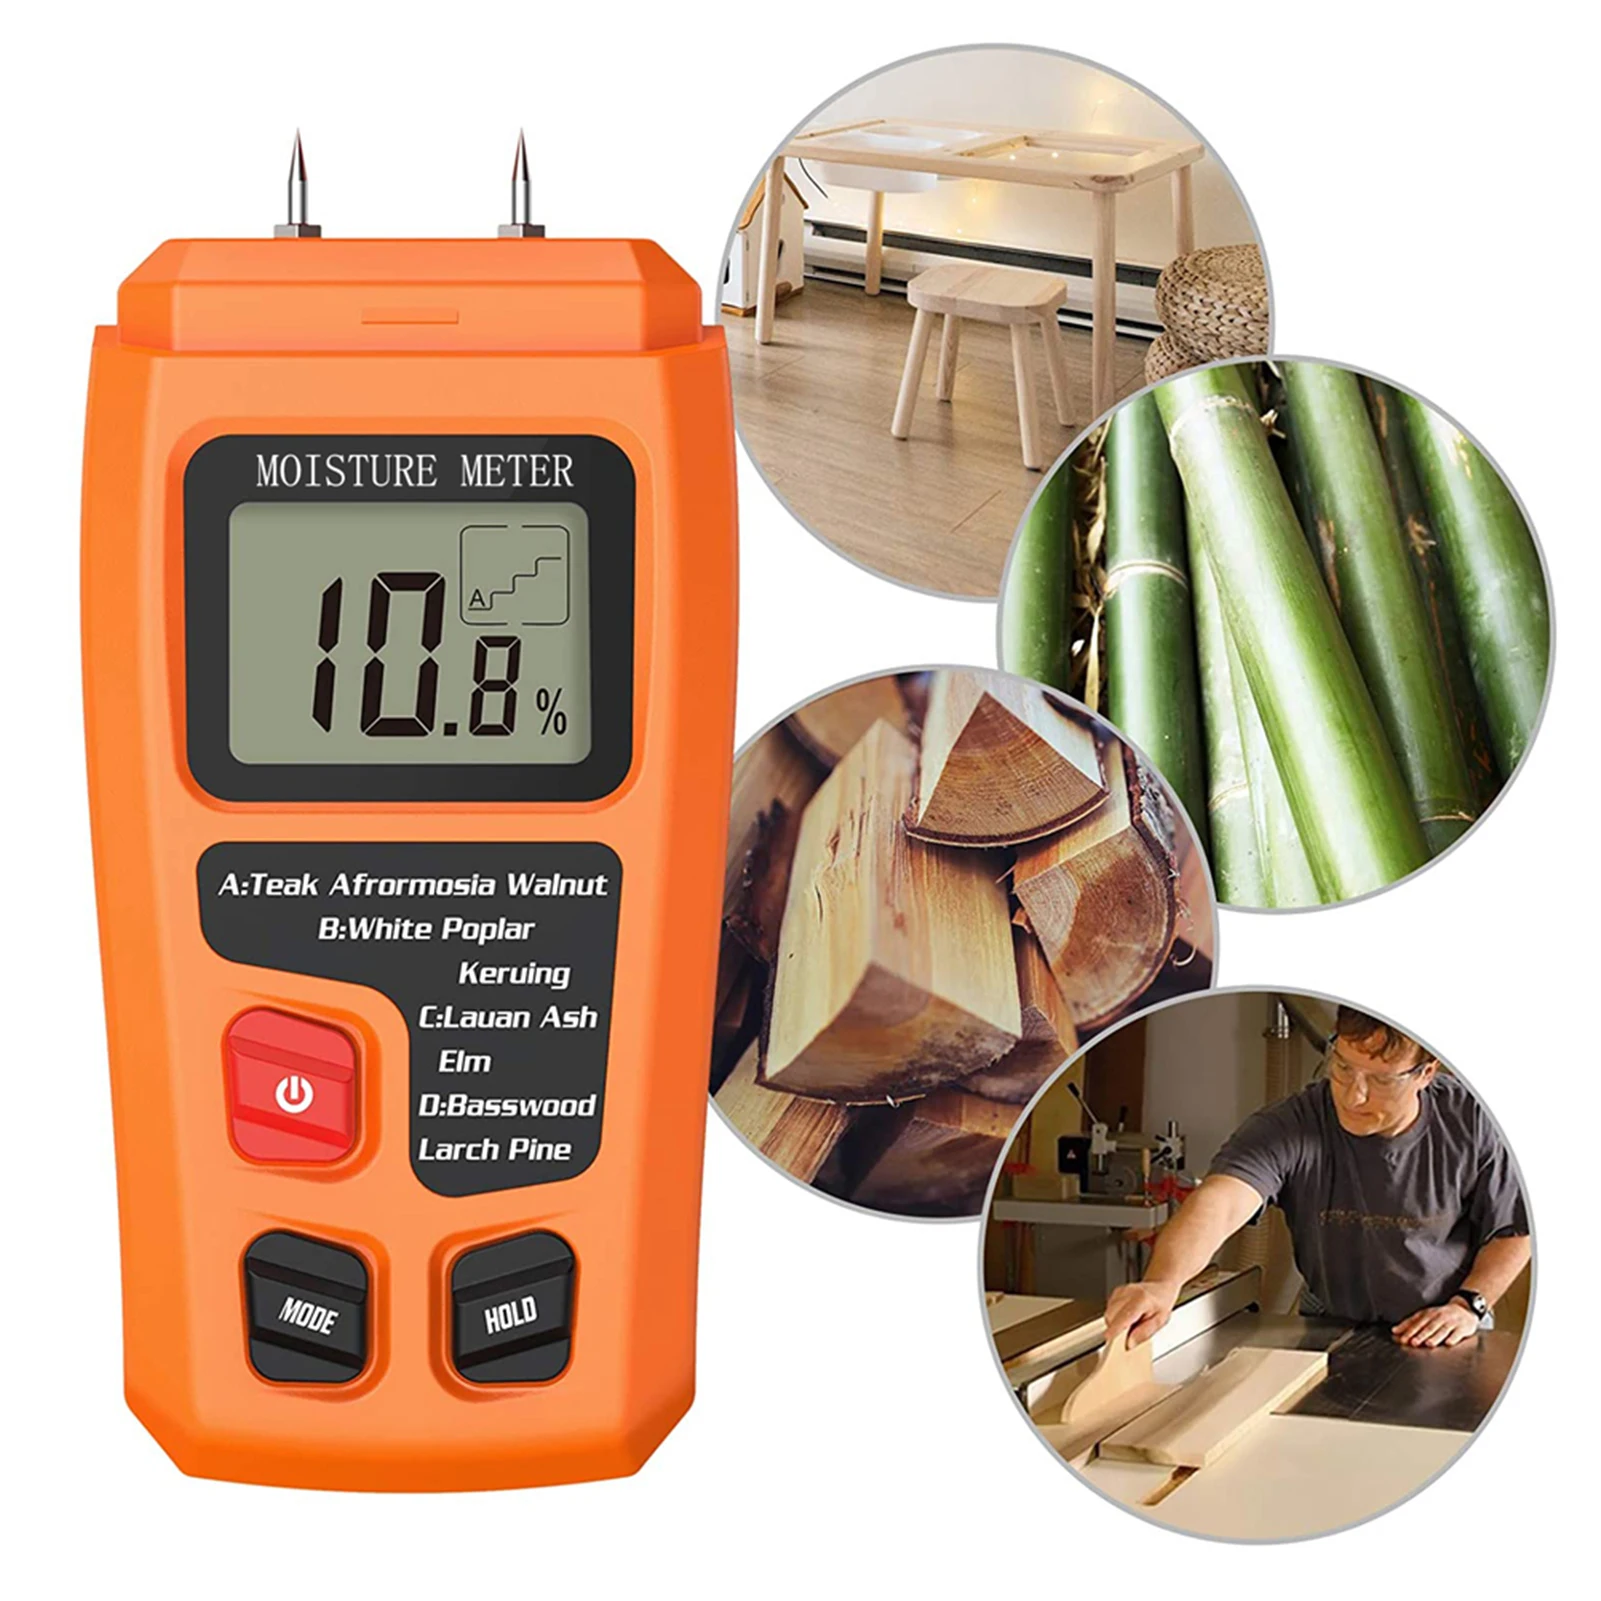 

Цифровой измеритель влажности Pin-Type, тестер влажности с ЖК-дисплеем для измерения древесины, строительных материалов, деревянного пола